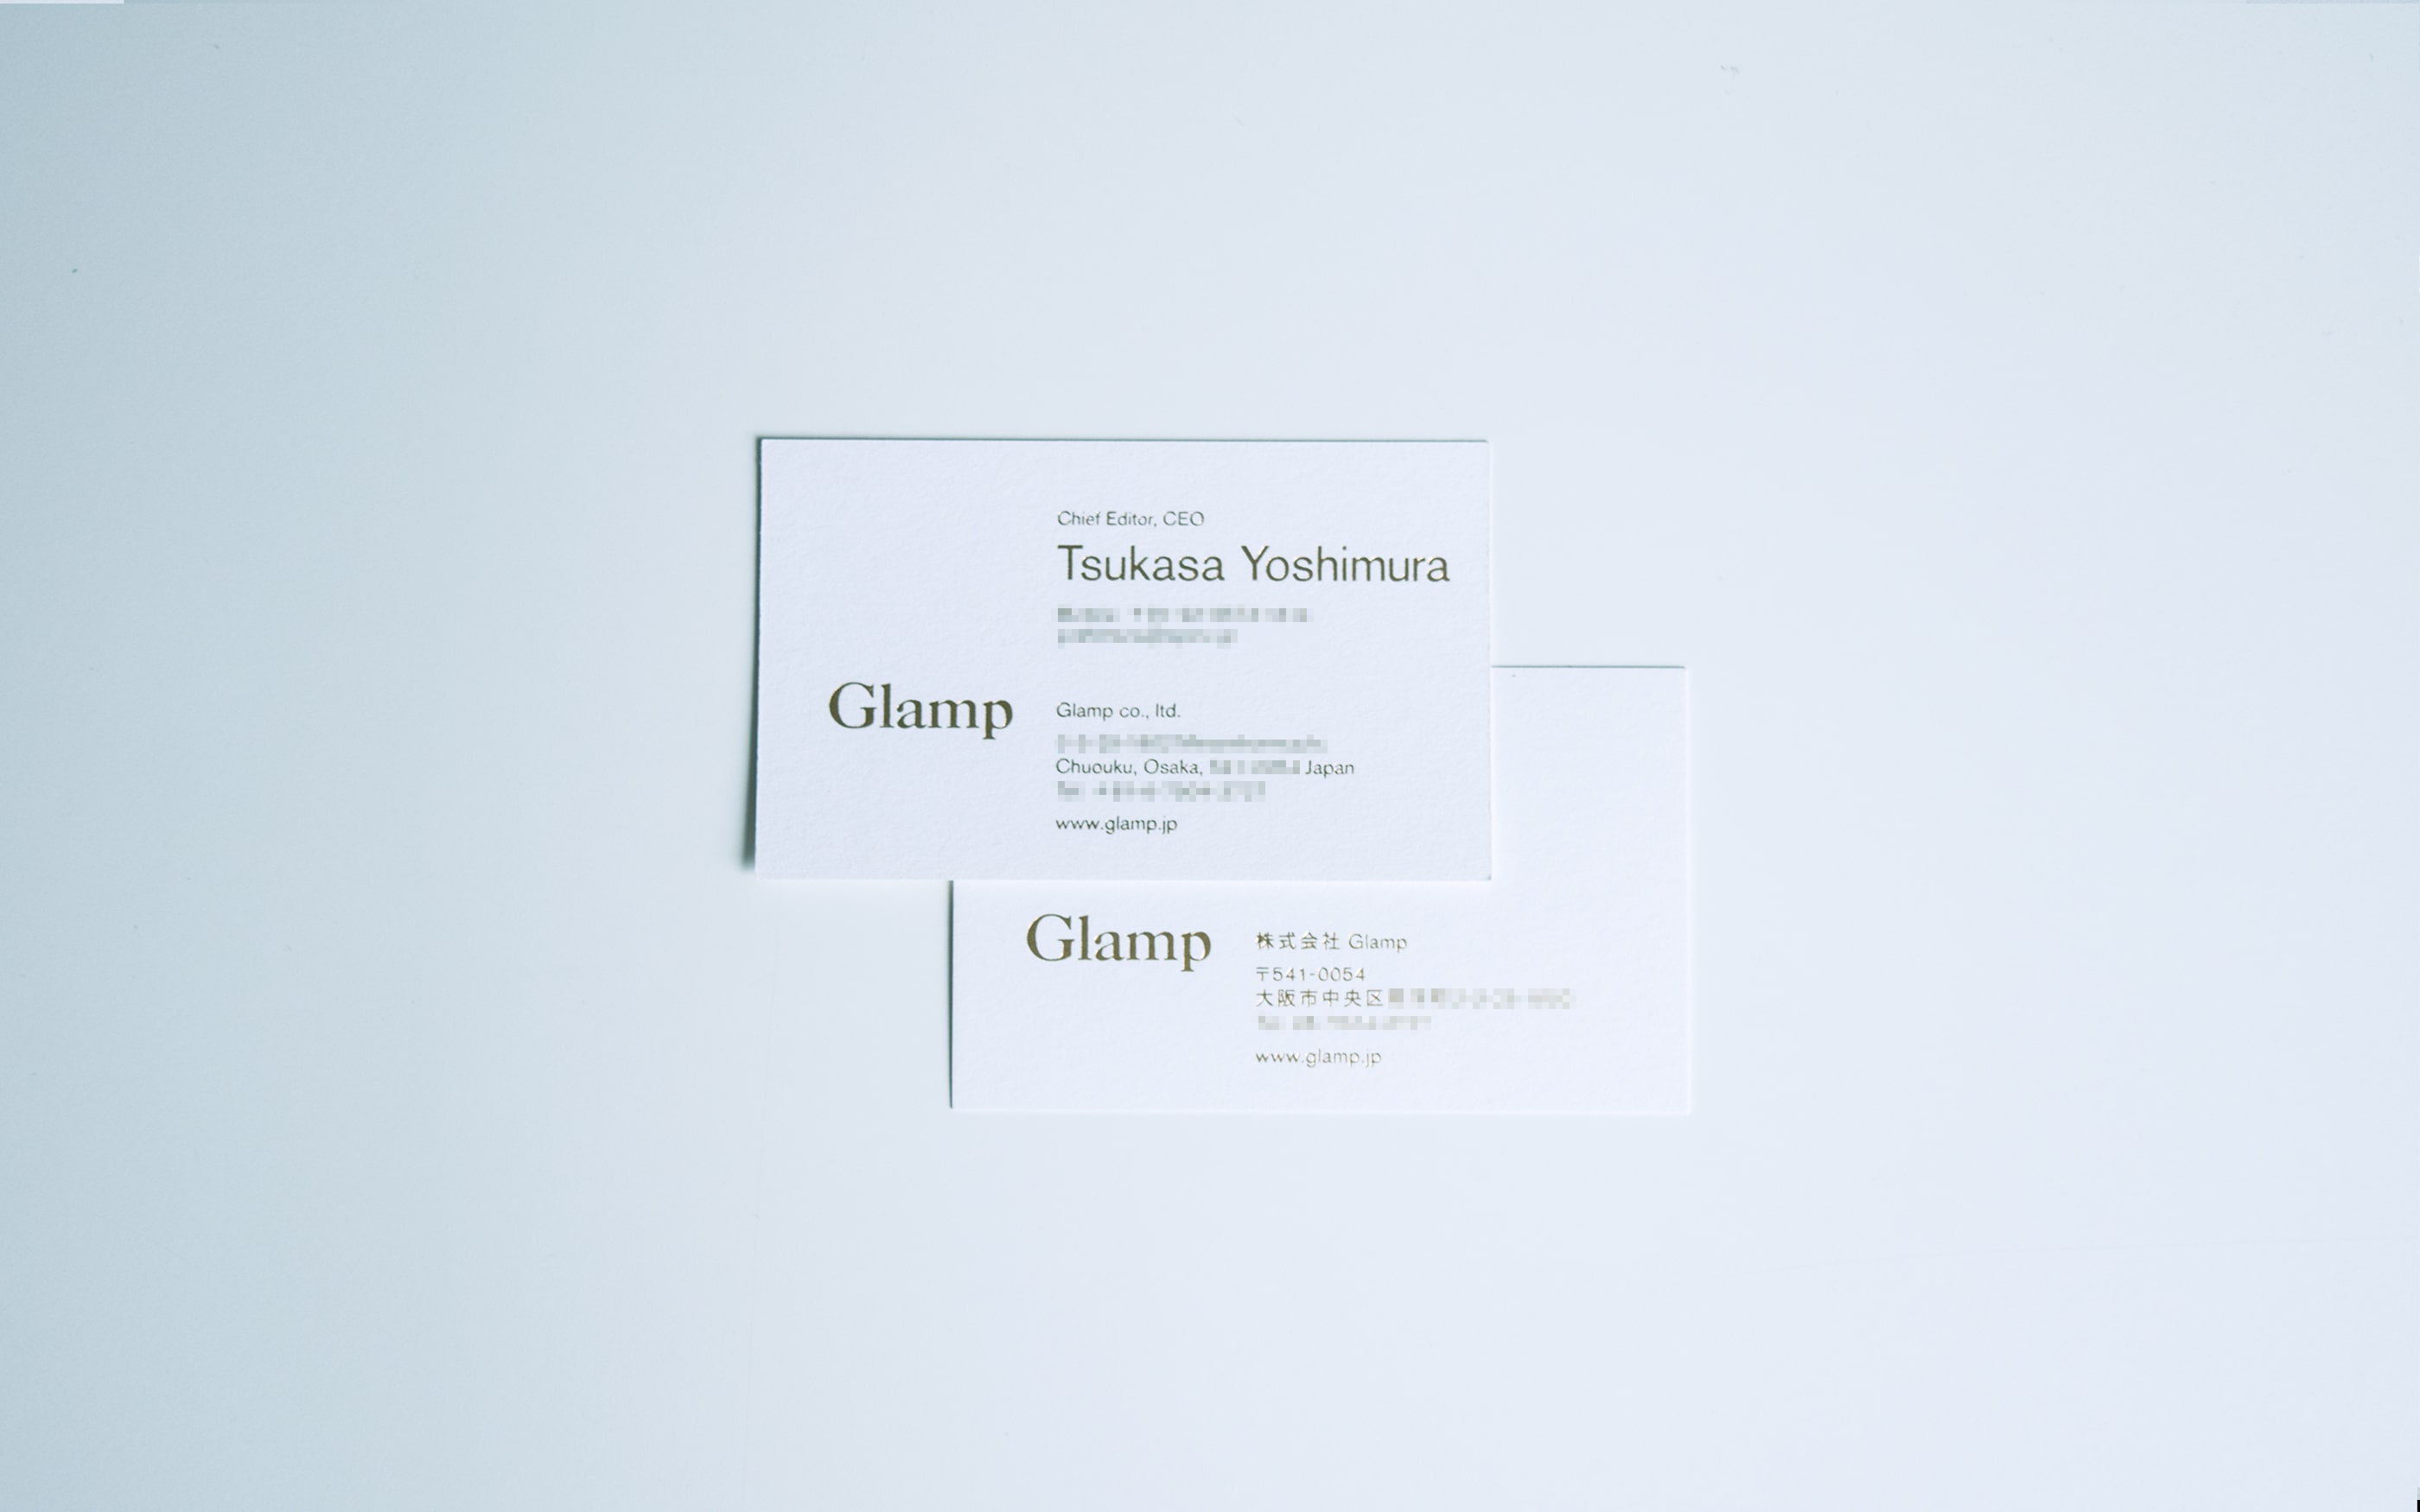 グランプ 名刺, glamp business card